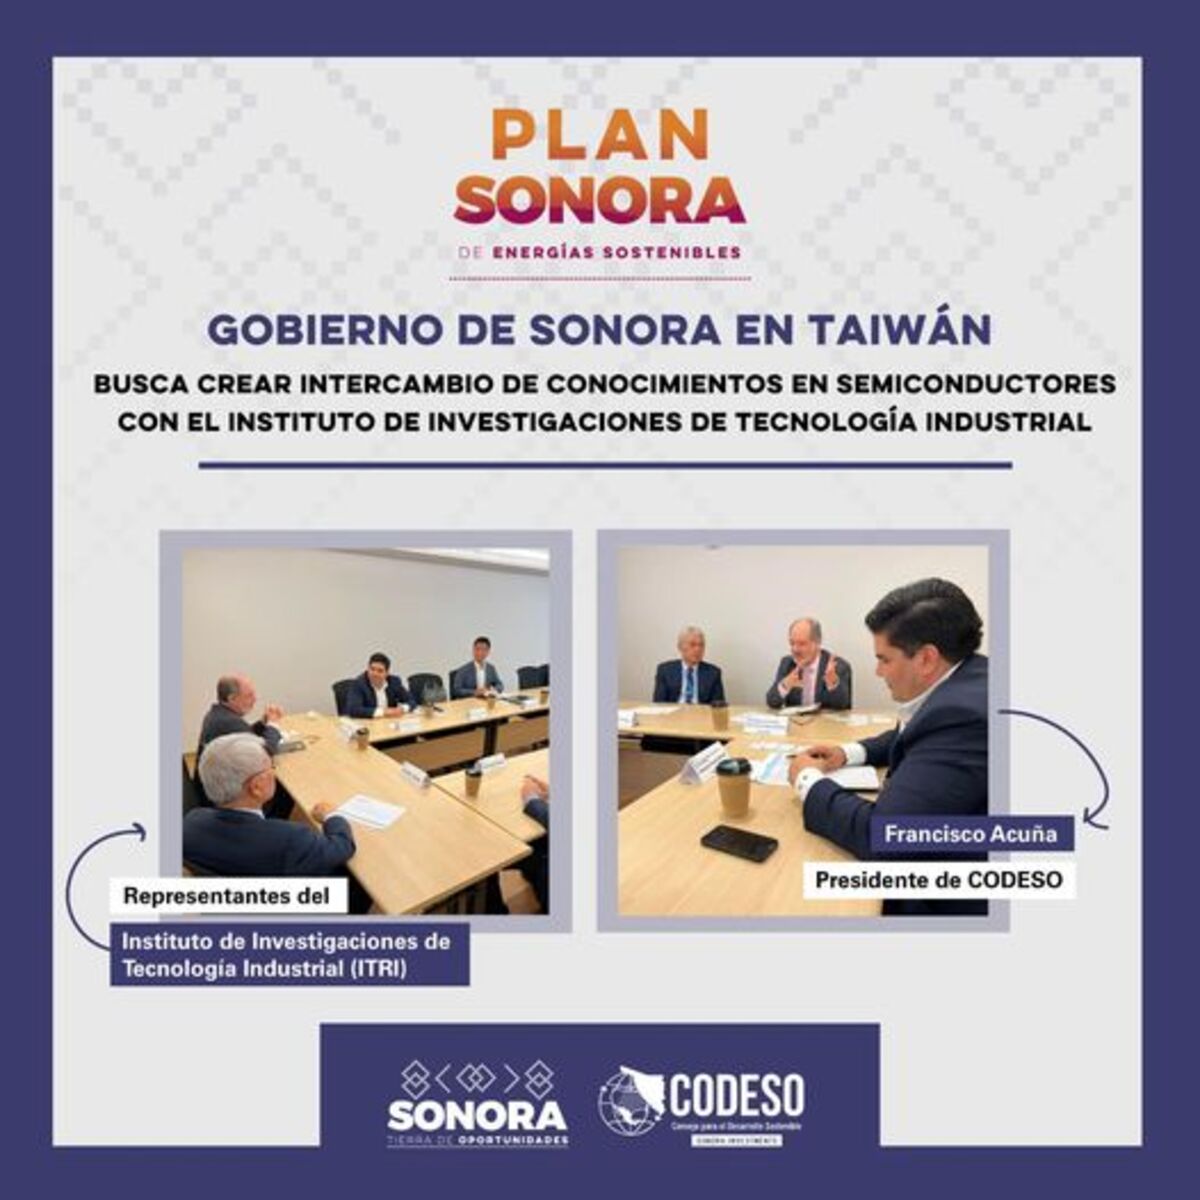 El gobierno Sonora busca que empresarios de Taiwán construyan plantas de semiconductores